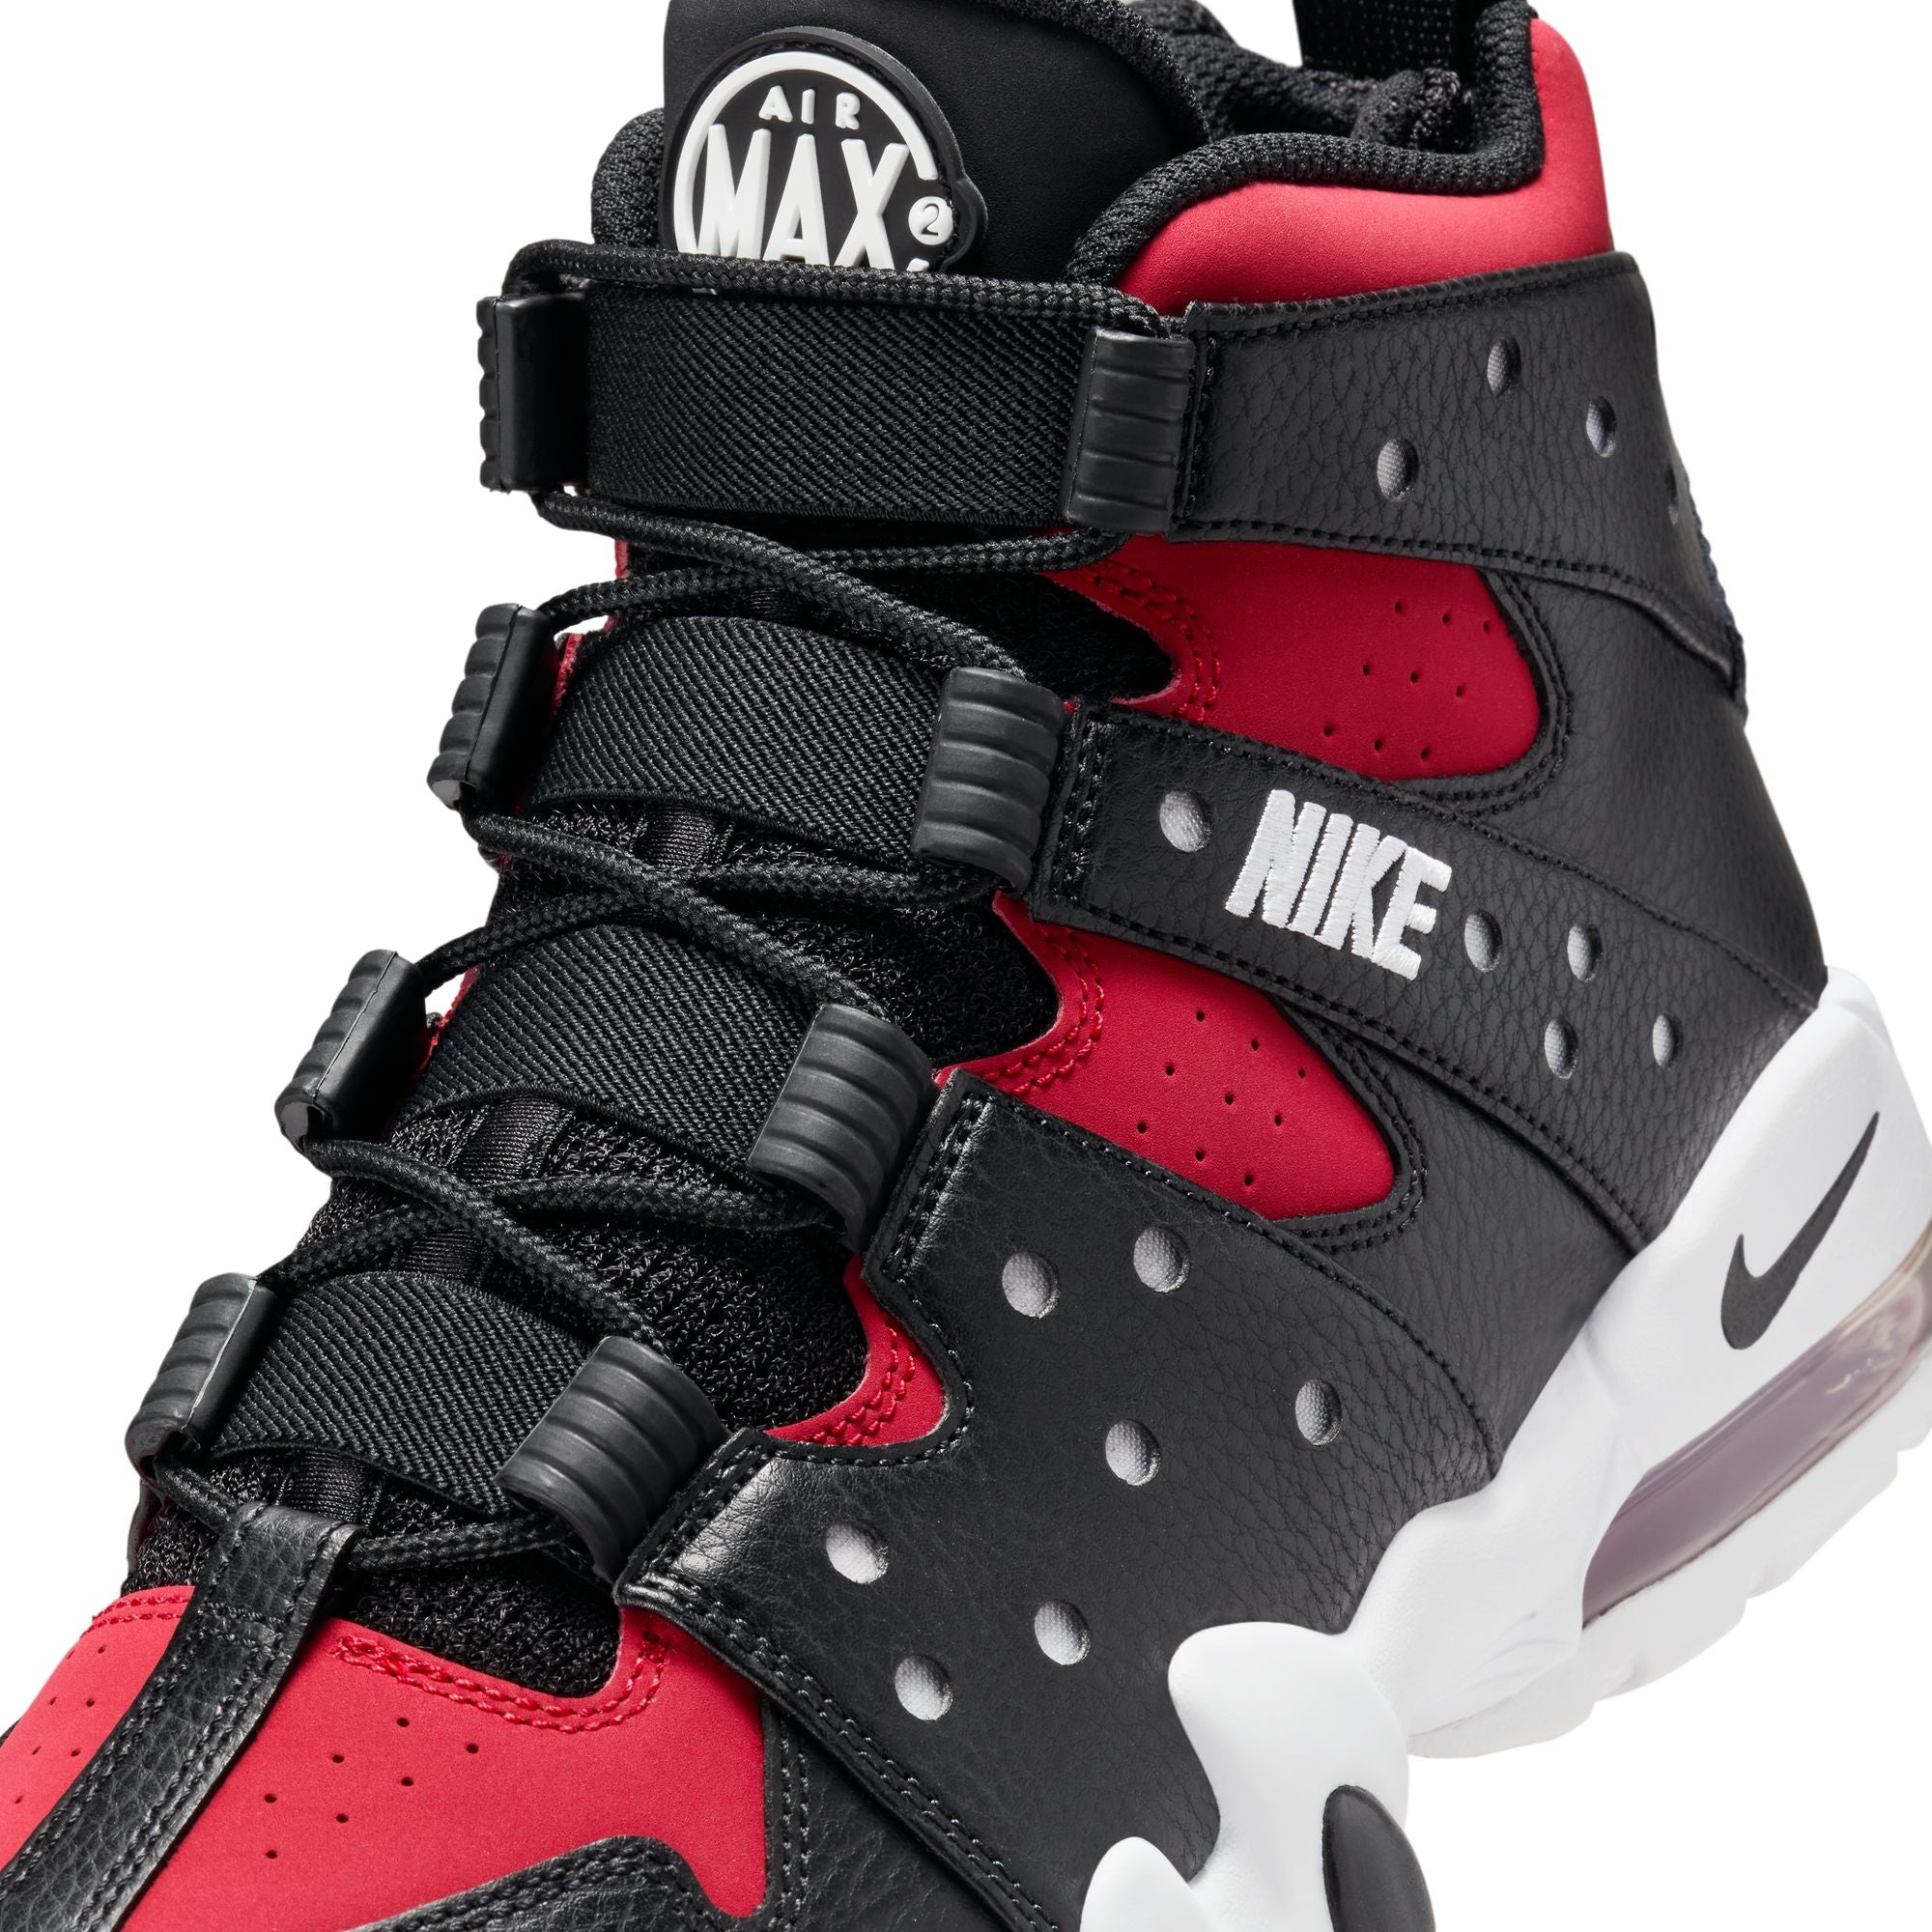 Nike Air Max2 CB '94